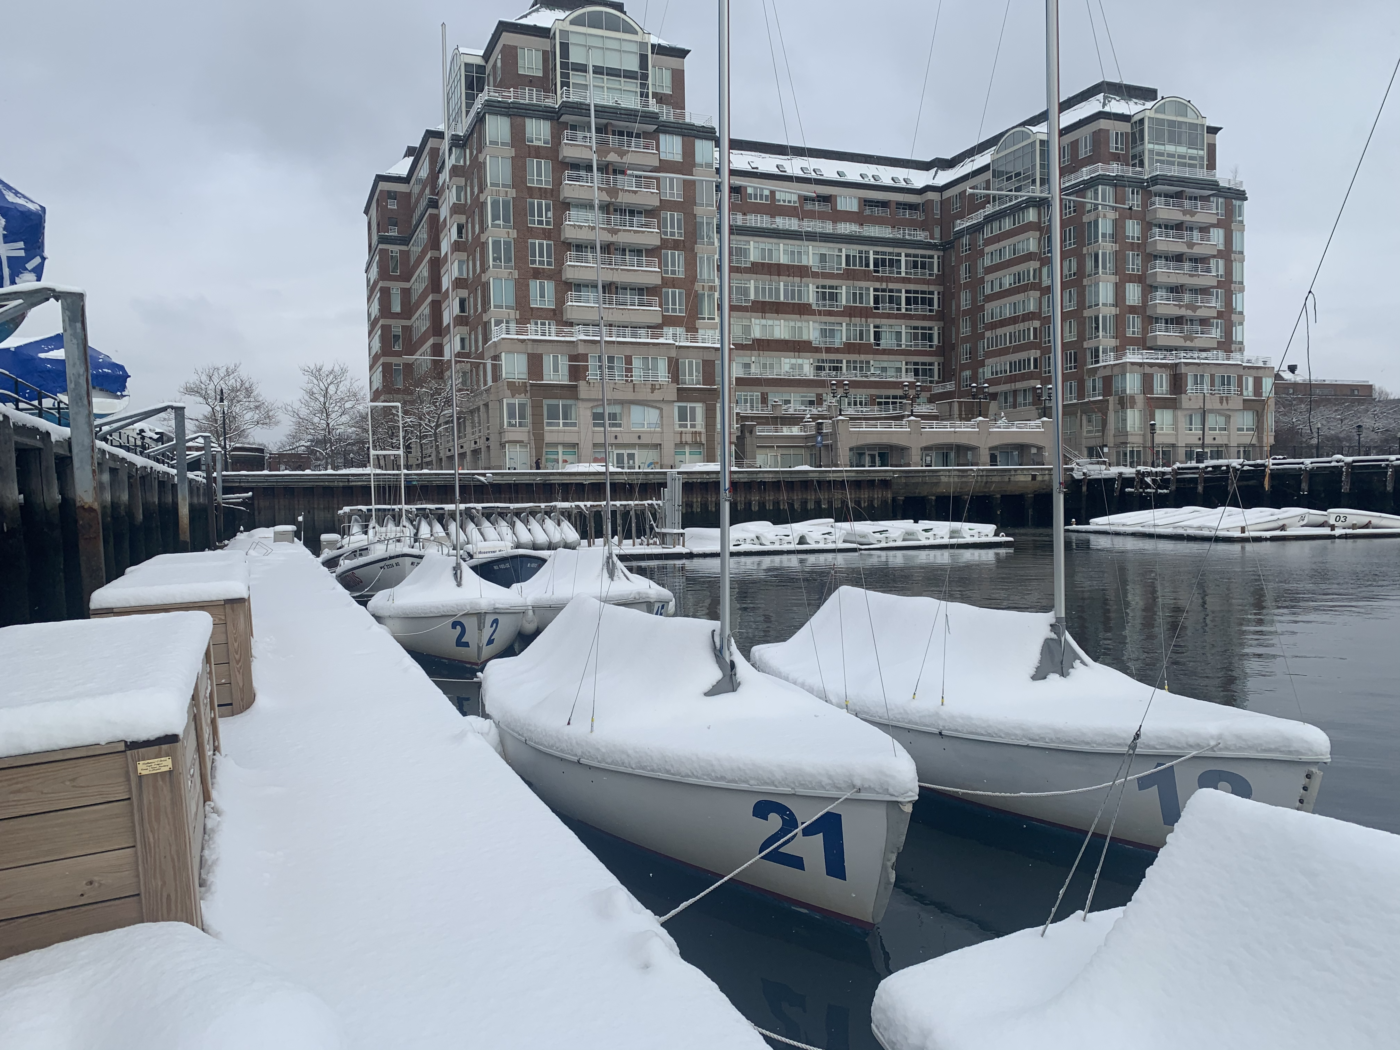 Frostbiting Week 12 Snowy Dock